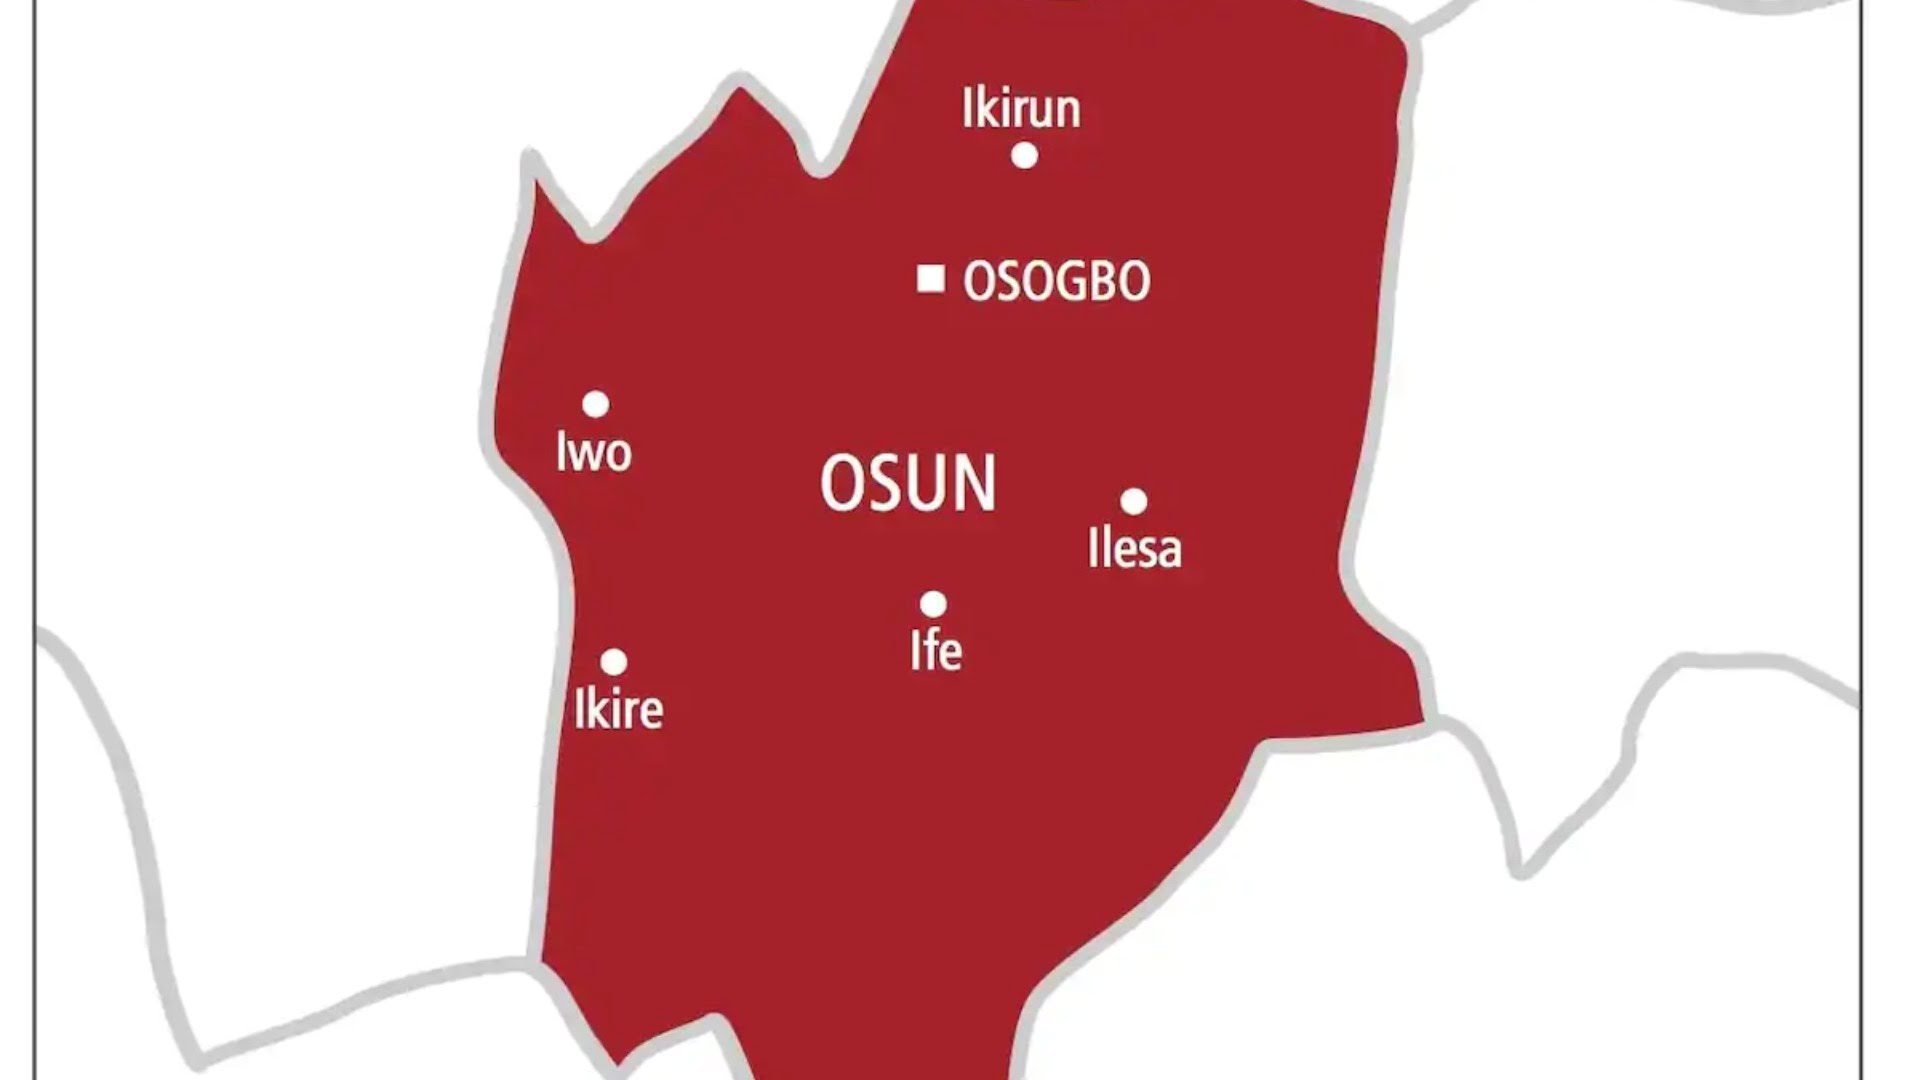 Osun